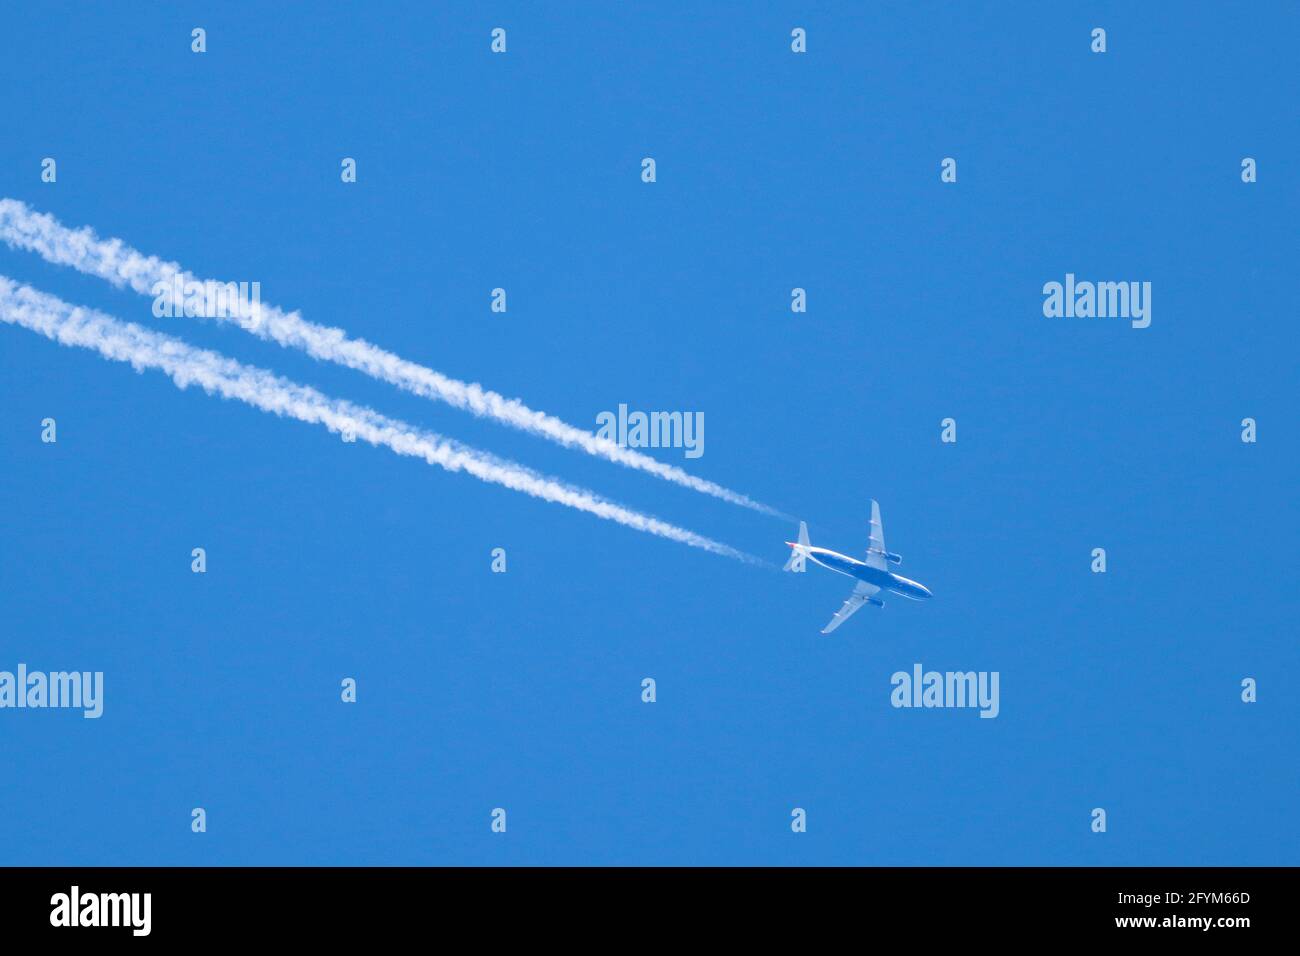 AALEN, GERMANIA - 26 maggio 2021: Un aereo da passanger sta volando attraverso un cielo blu senza nuvole. Lascia tracce di condenstation bianche w Foto Stock